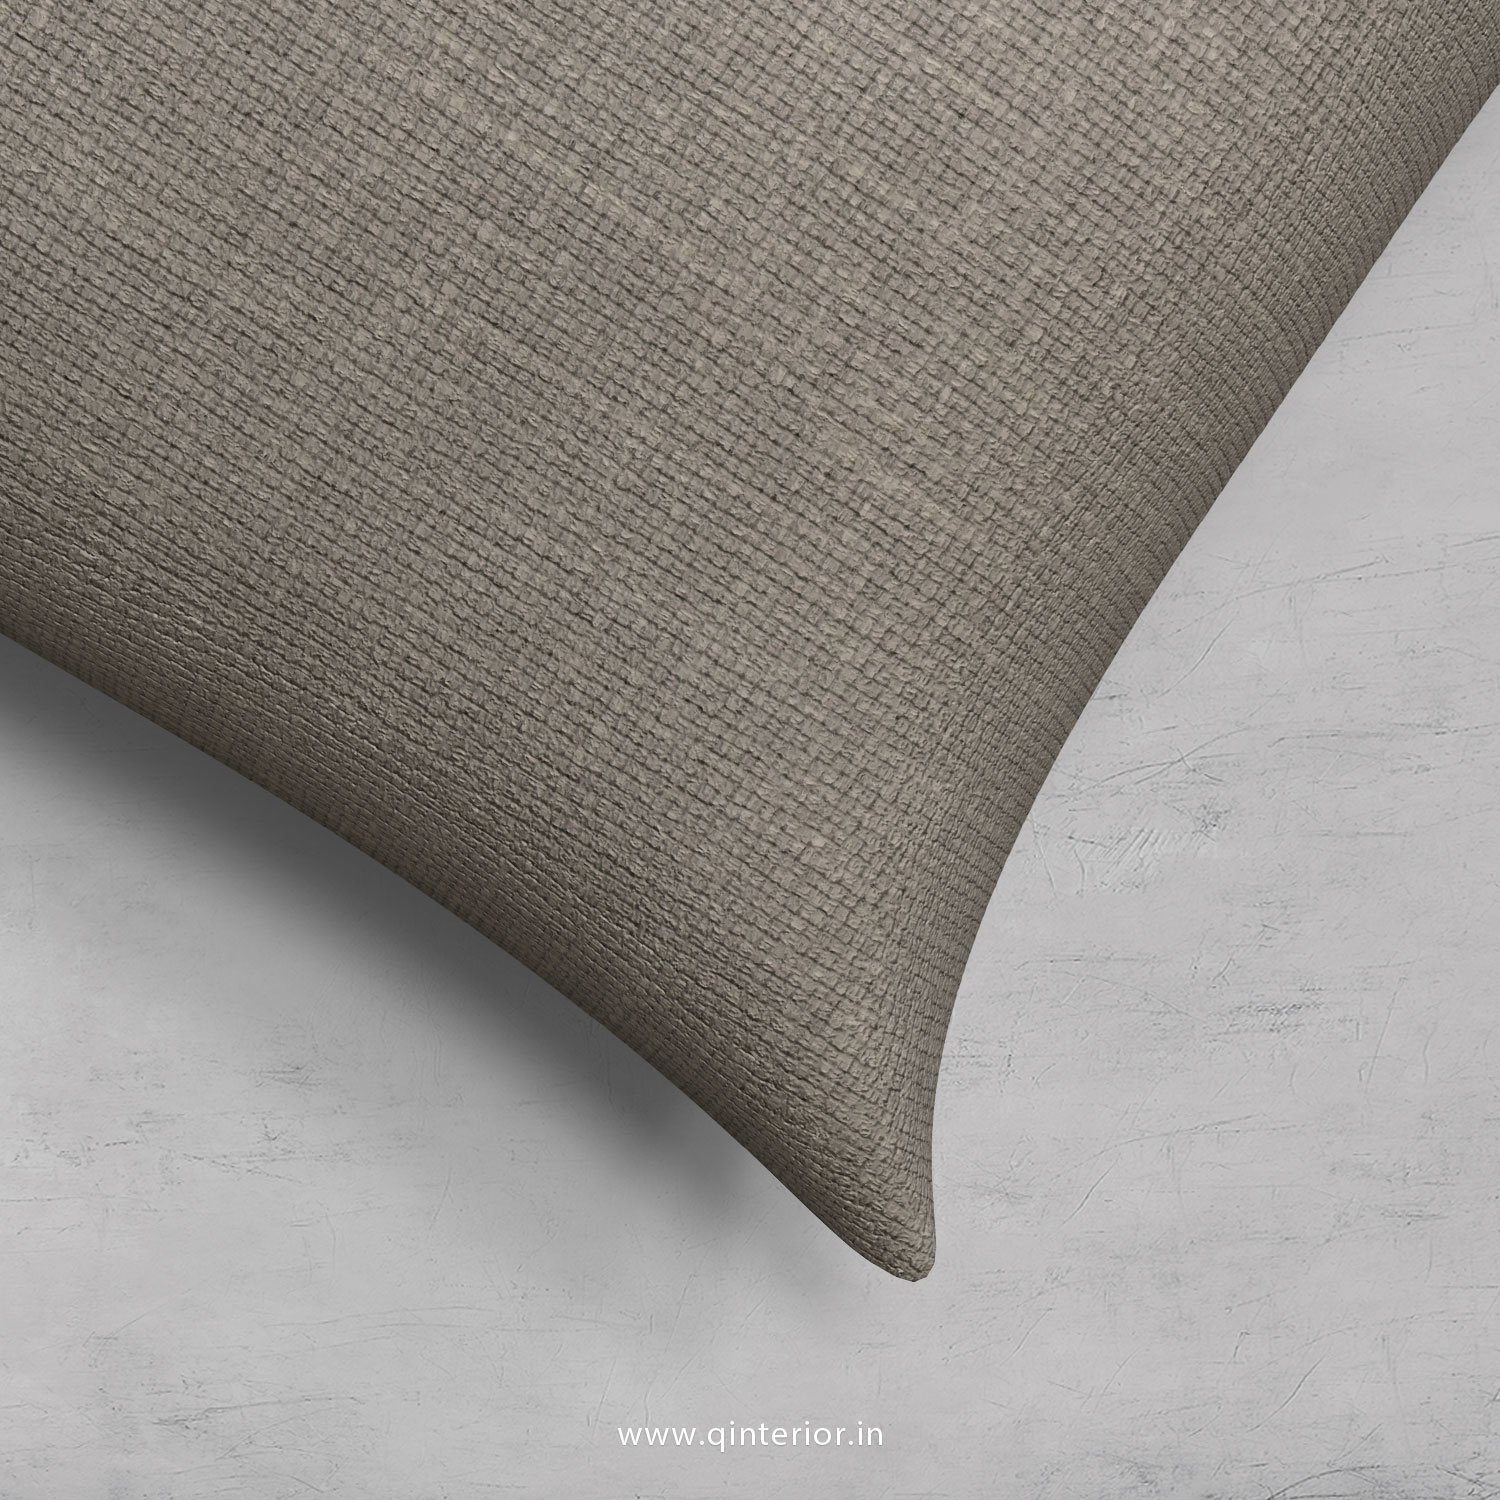 Cushion With Cushion Cover in Cotton Plain - CUS001 CP12